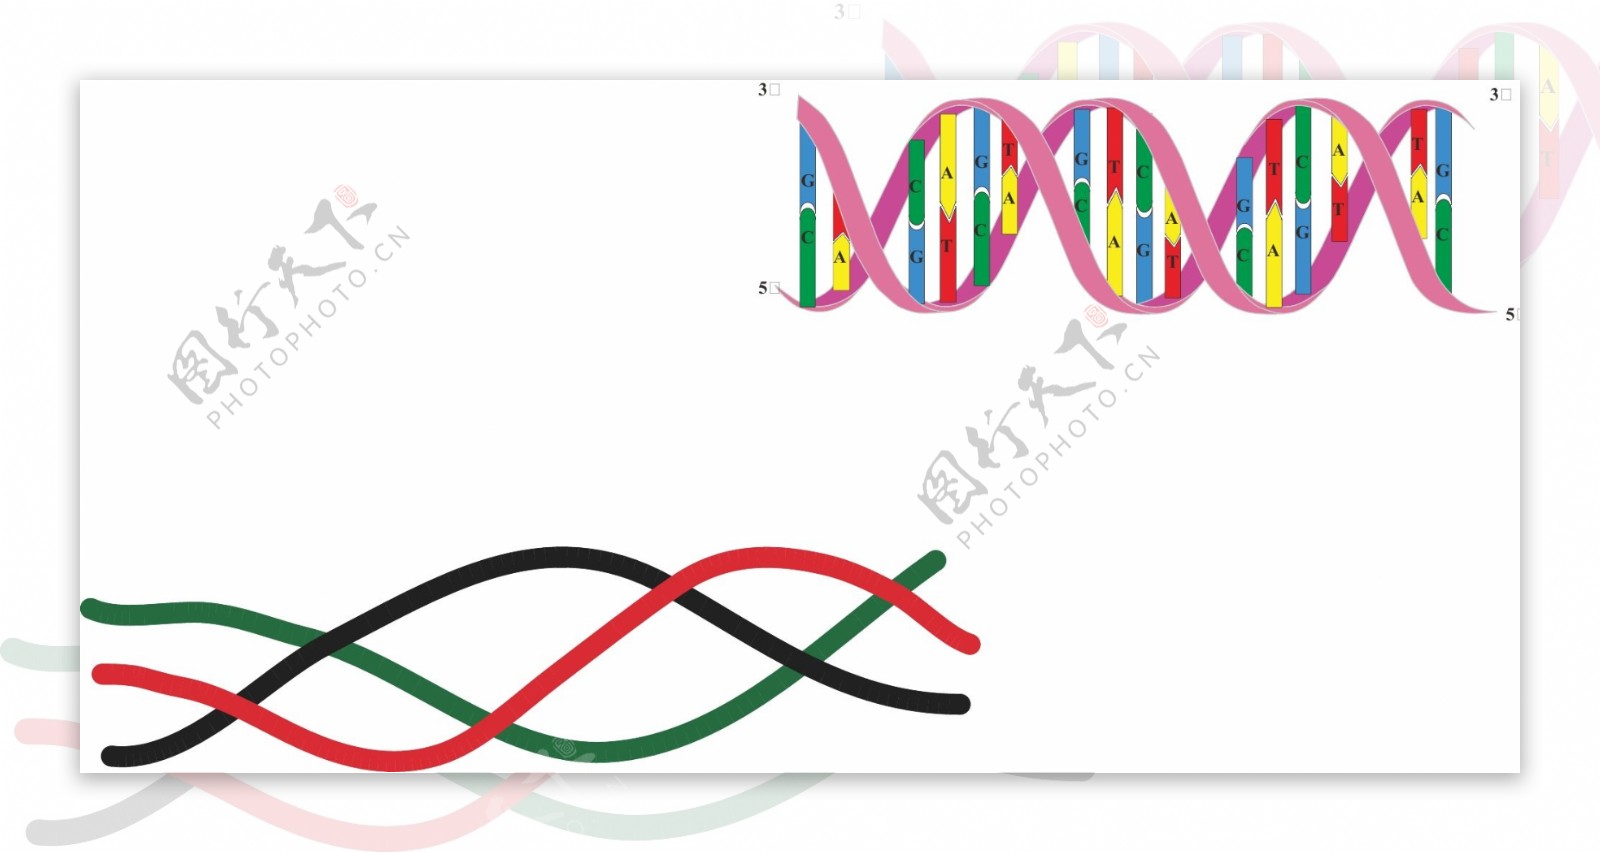 DNA双螺旋